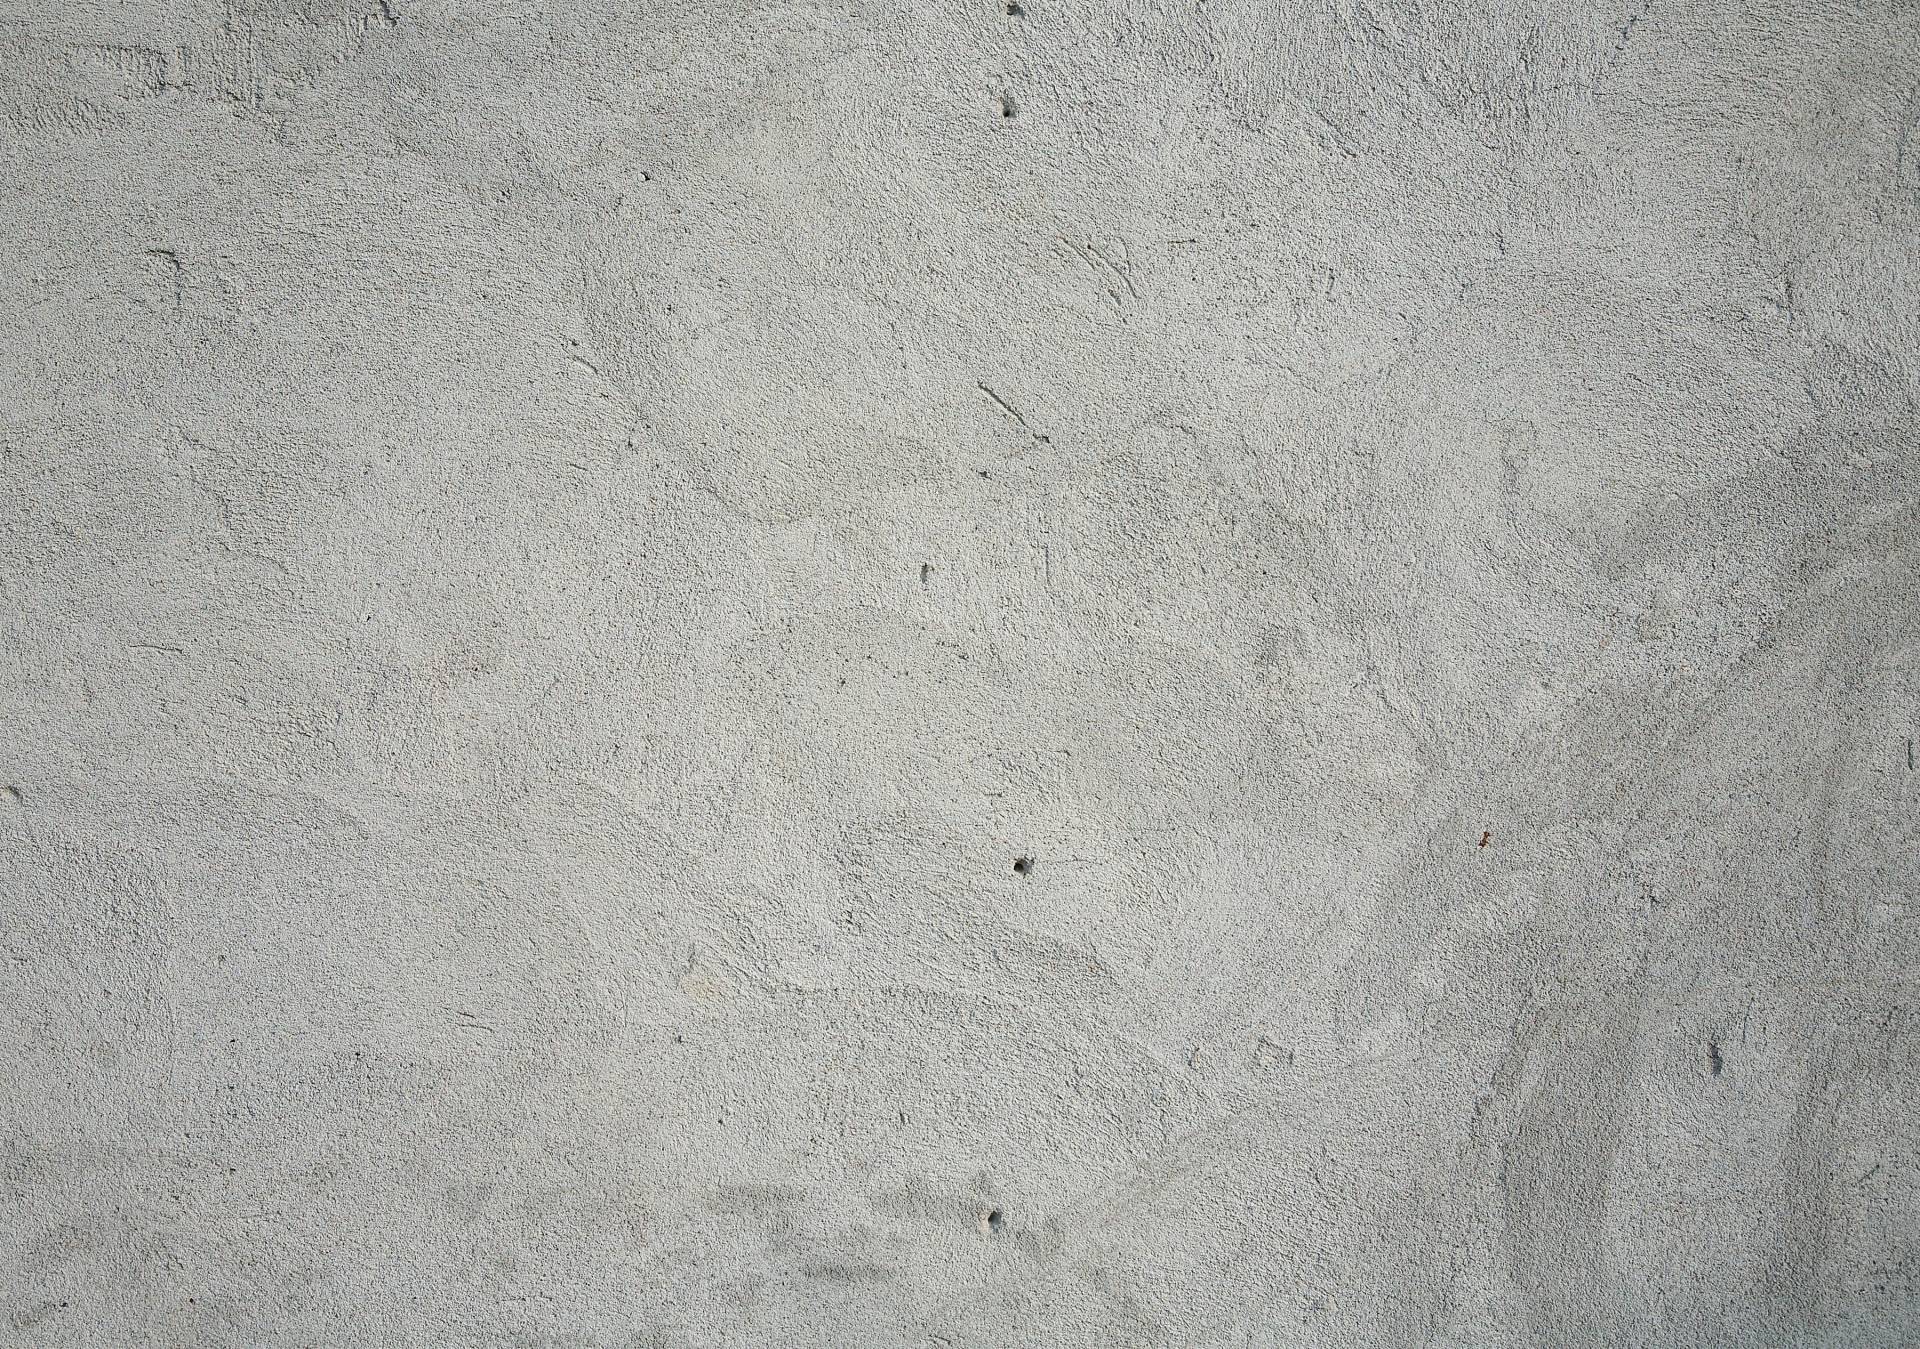 Papermoon Fototapete »Grunge Cement Wall« von Papermoon